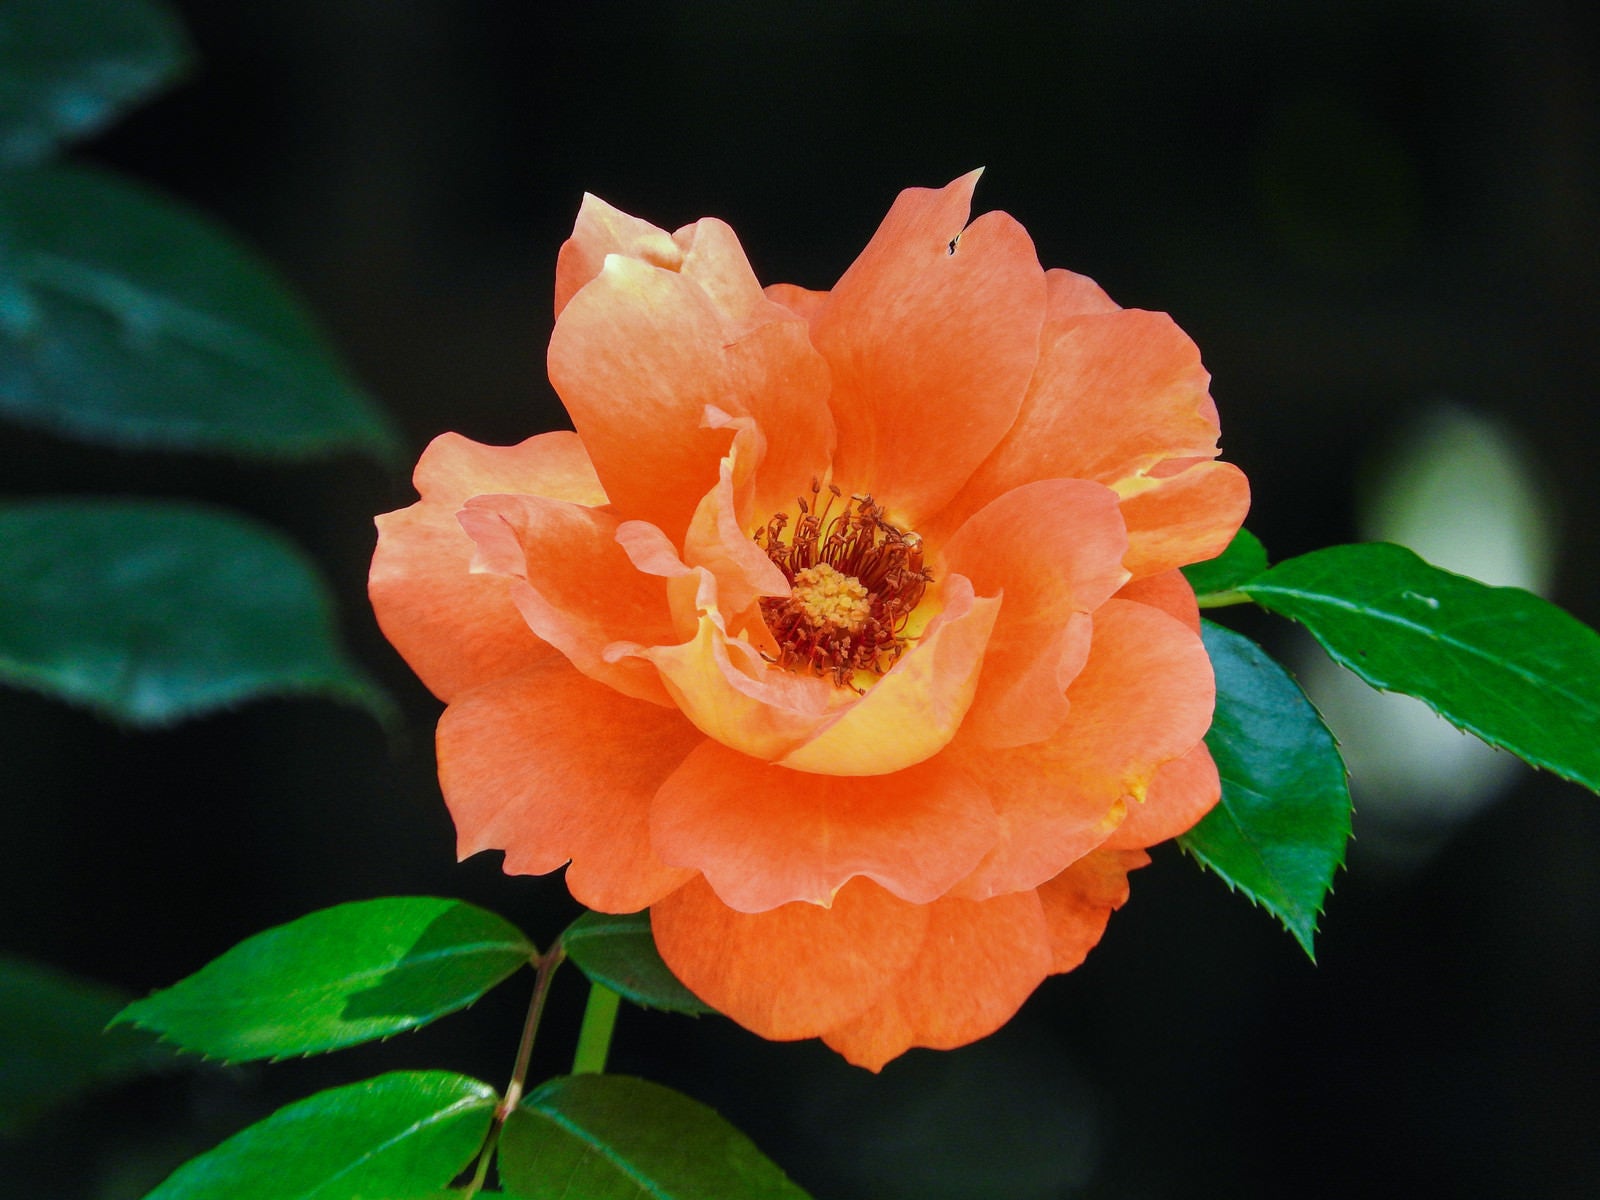 「オレンジ色の薔薇」の写真